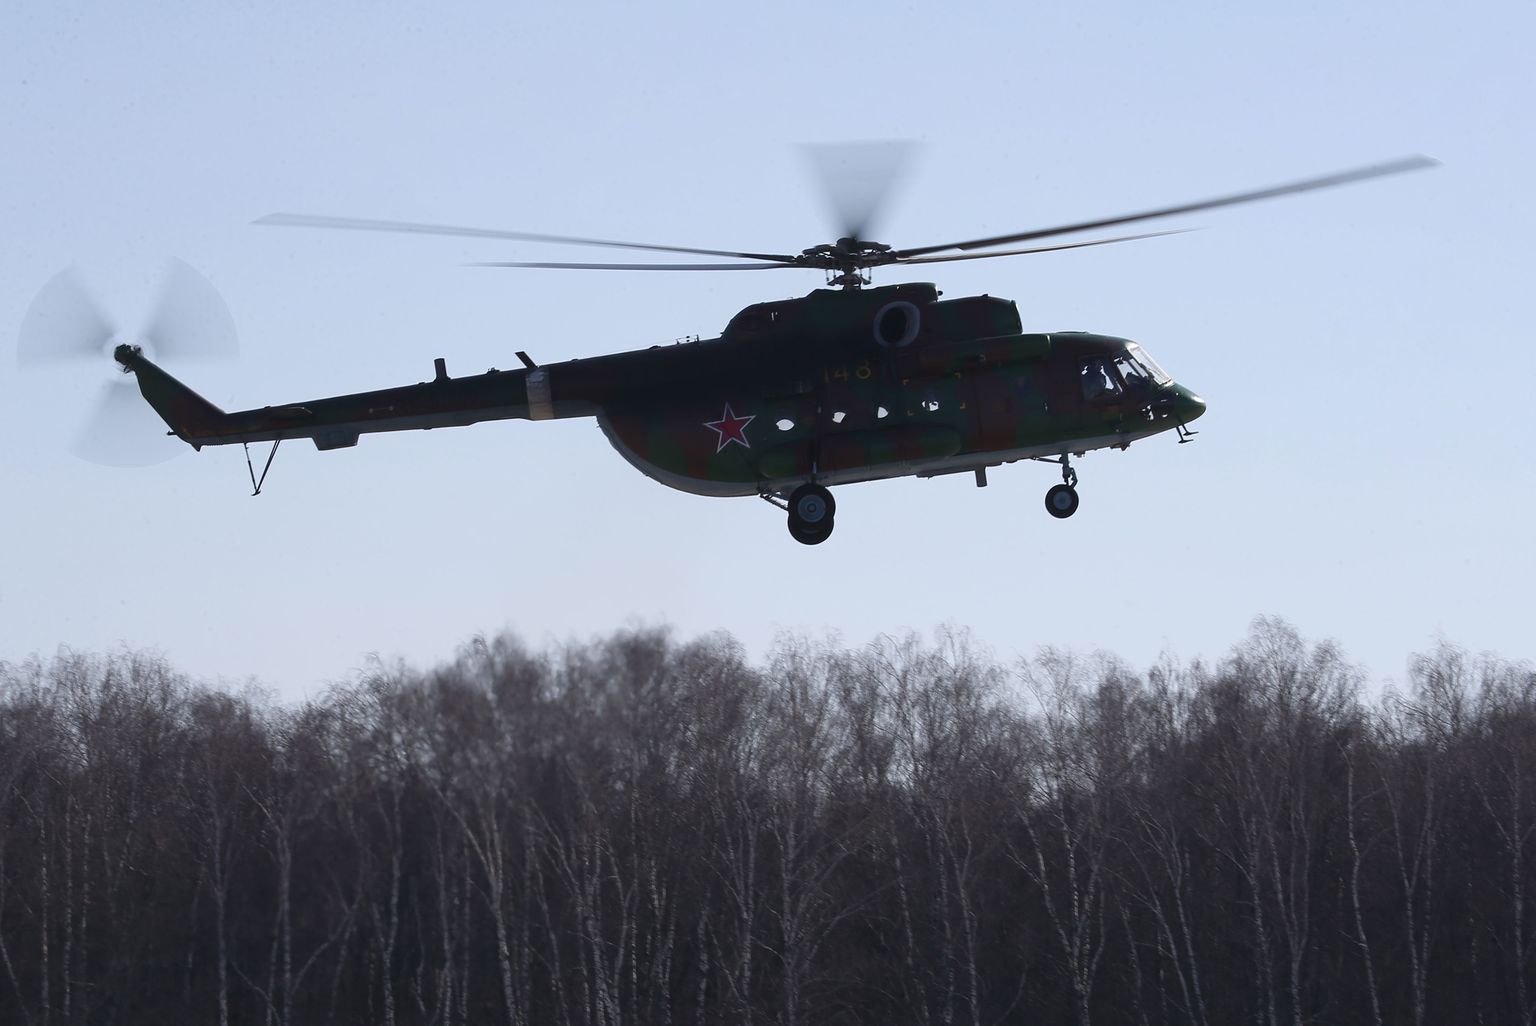 Вертолет Ми-8. Иллюстративное фото.